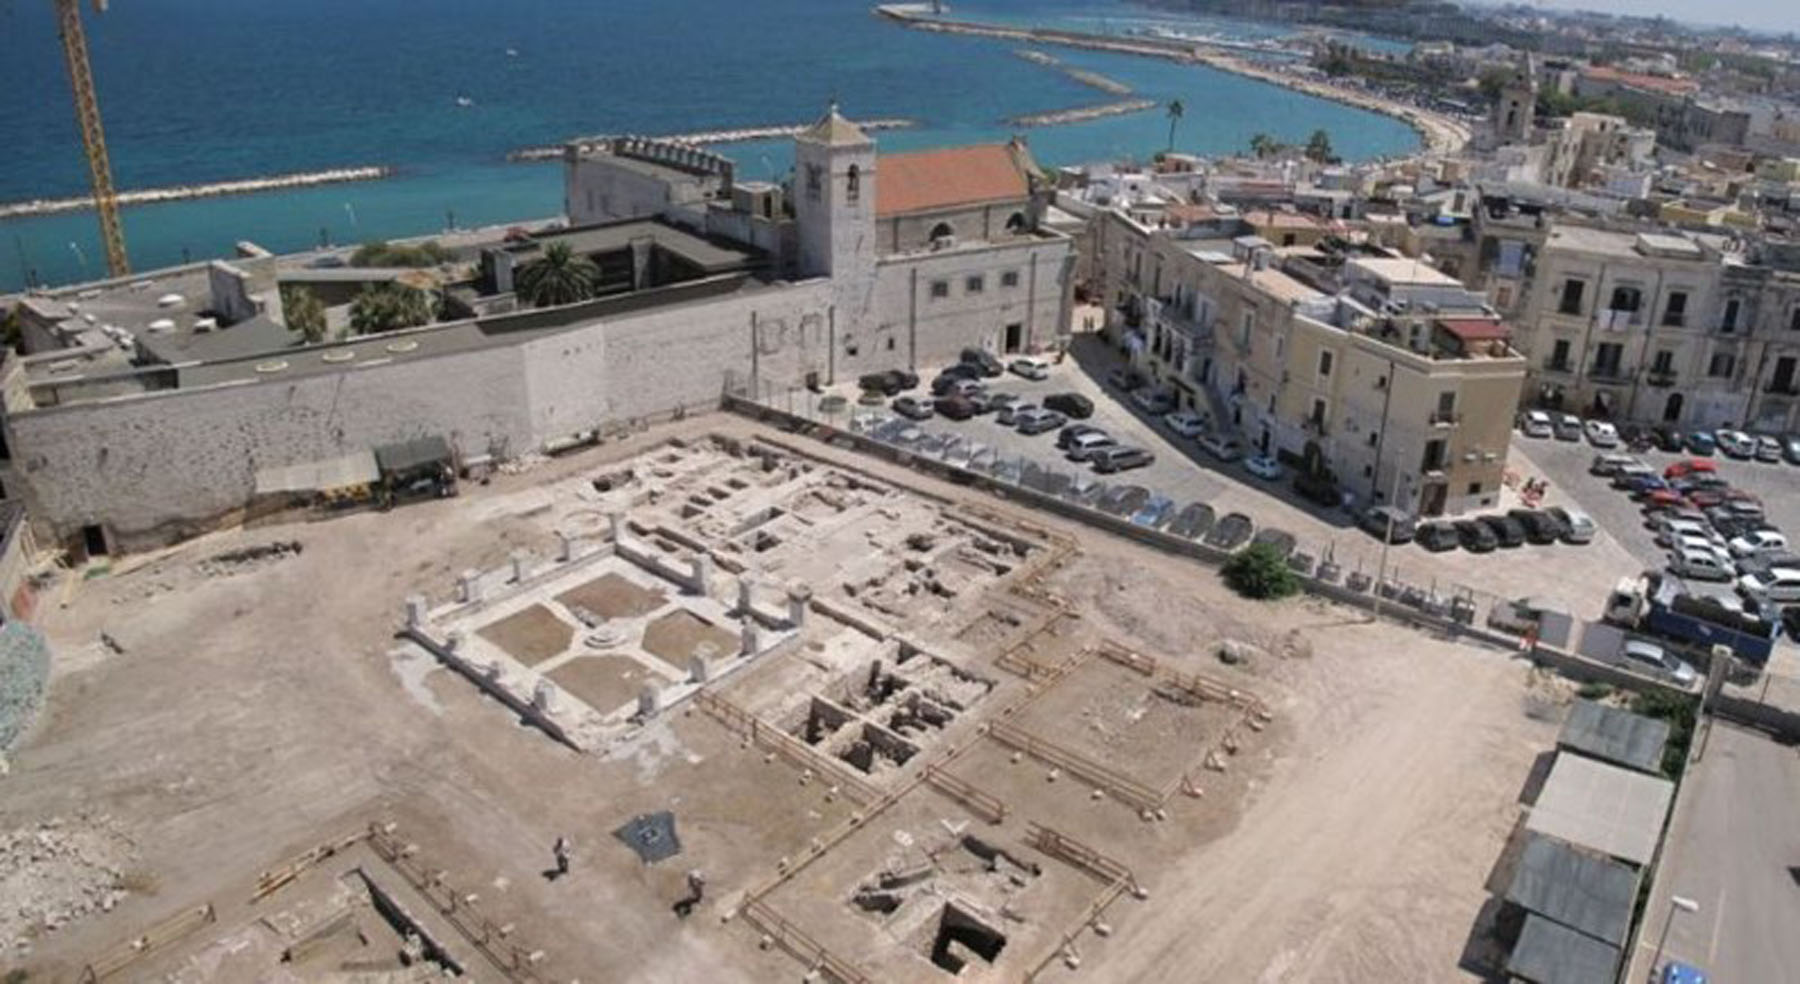 Bari – Santa Scolastica – Restauro e valorizzazione del Museo di Santa Scolastica e dell’area archeologica di San Pietro